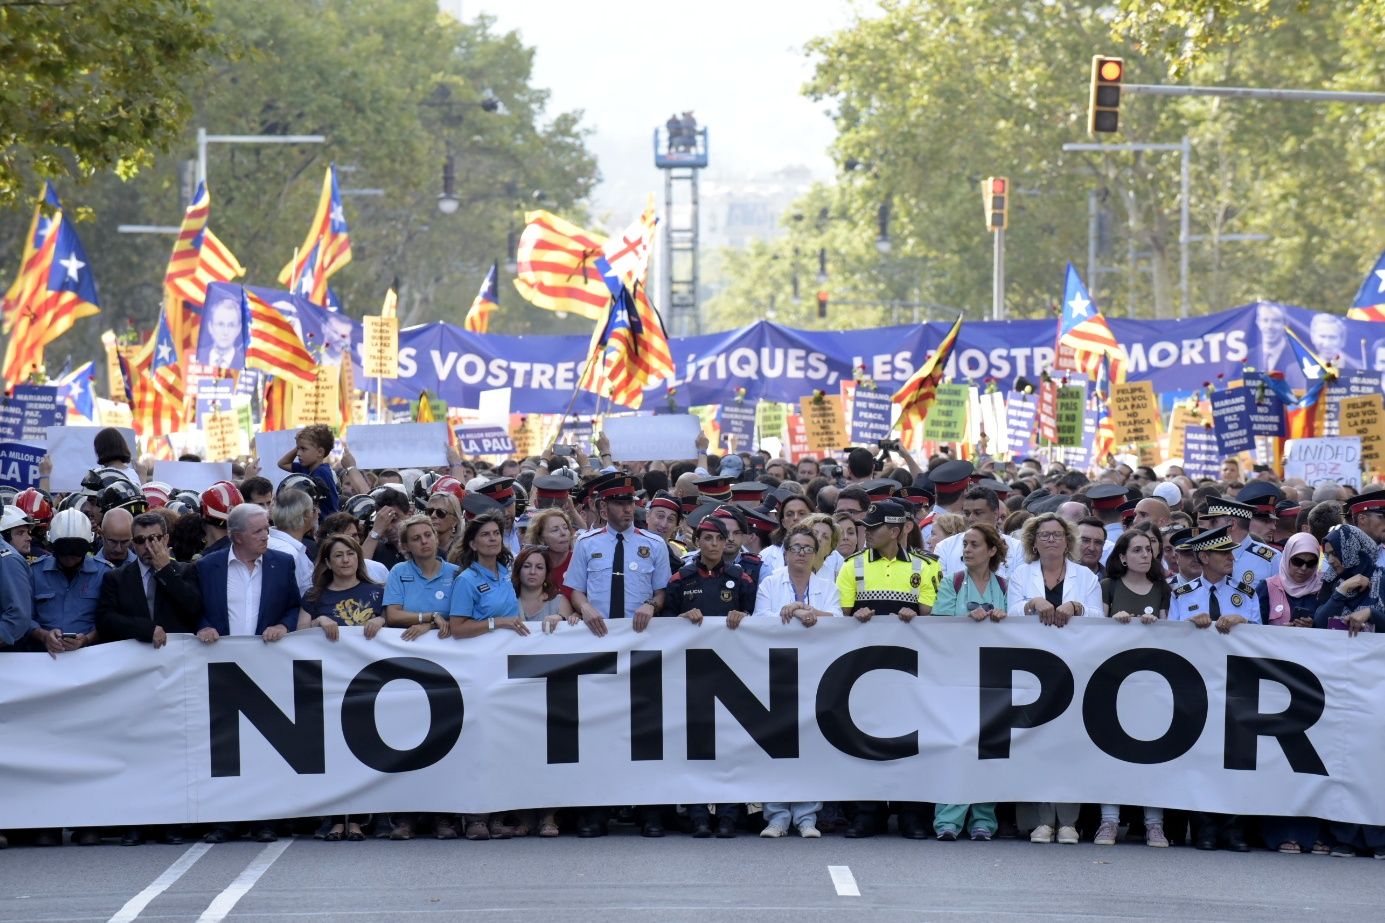 Els catalanòfobs atien l'odi a Twitter: "Una furgoneta ara, sisplau"